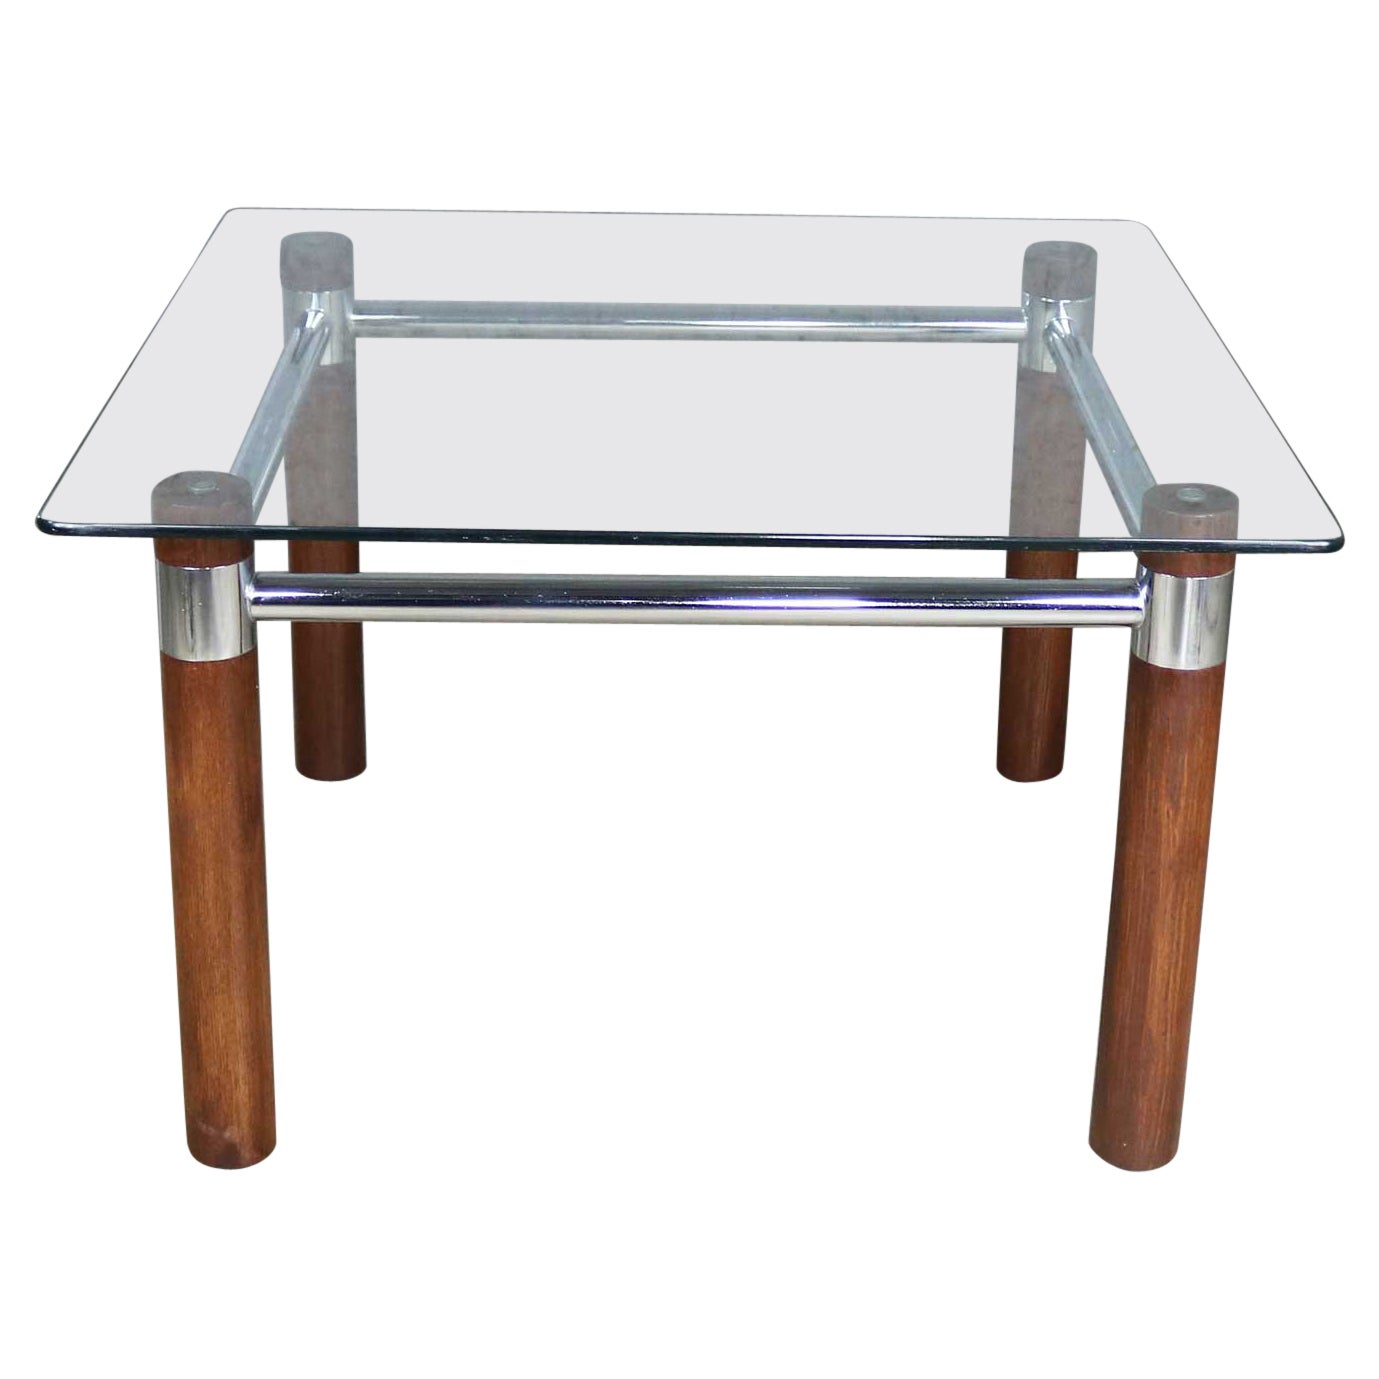 Table d'extrémité carrée en chêne cylindrique, chromée et verre, de style MCM à moderne